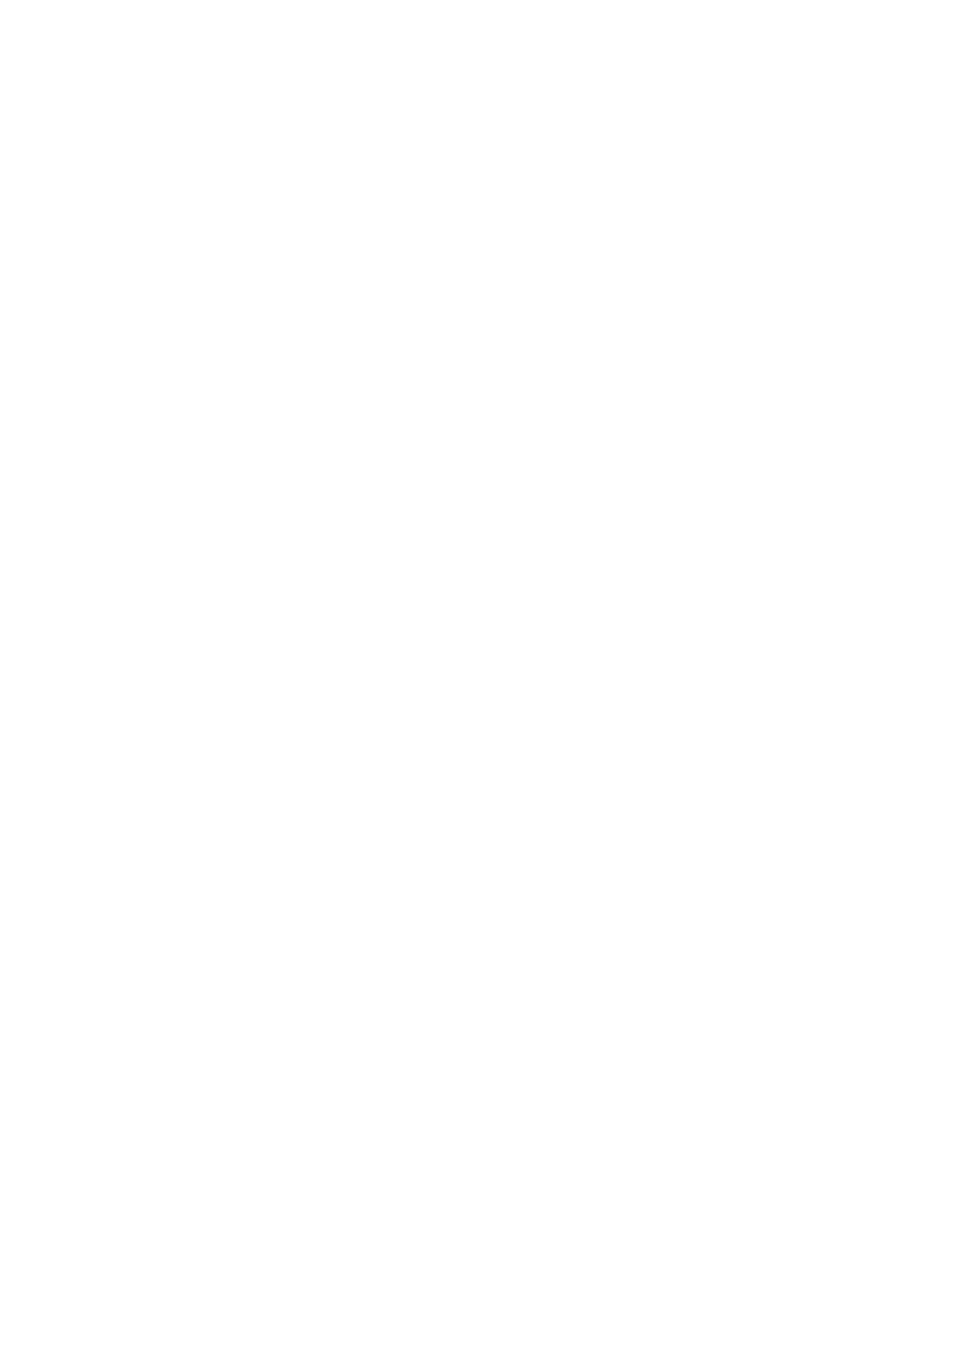 务 局 沈 阳 市 国 度 税 务 局 车 辆 购 置 税 征 收 管 理 分 5 报 名 通 过 审 核 人 数 前 十 的 职 位 http://www.hmxfp.com/dljy/20160701/478.